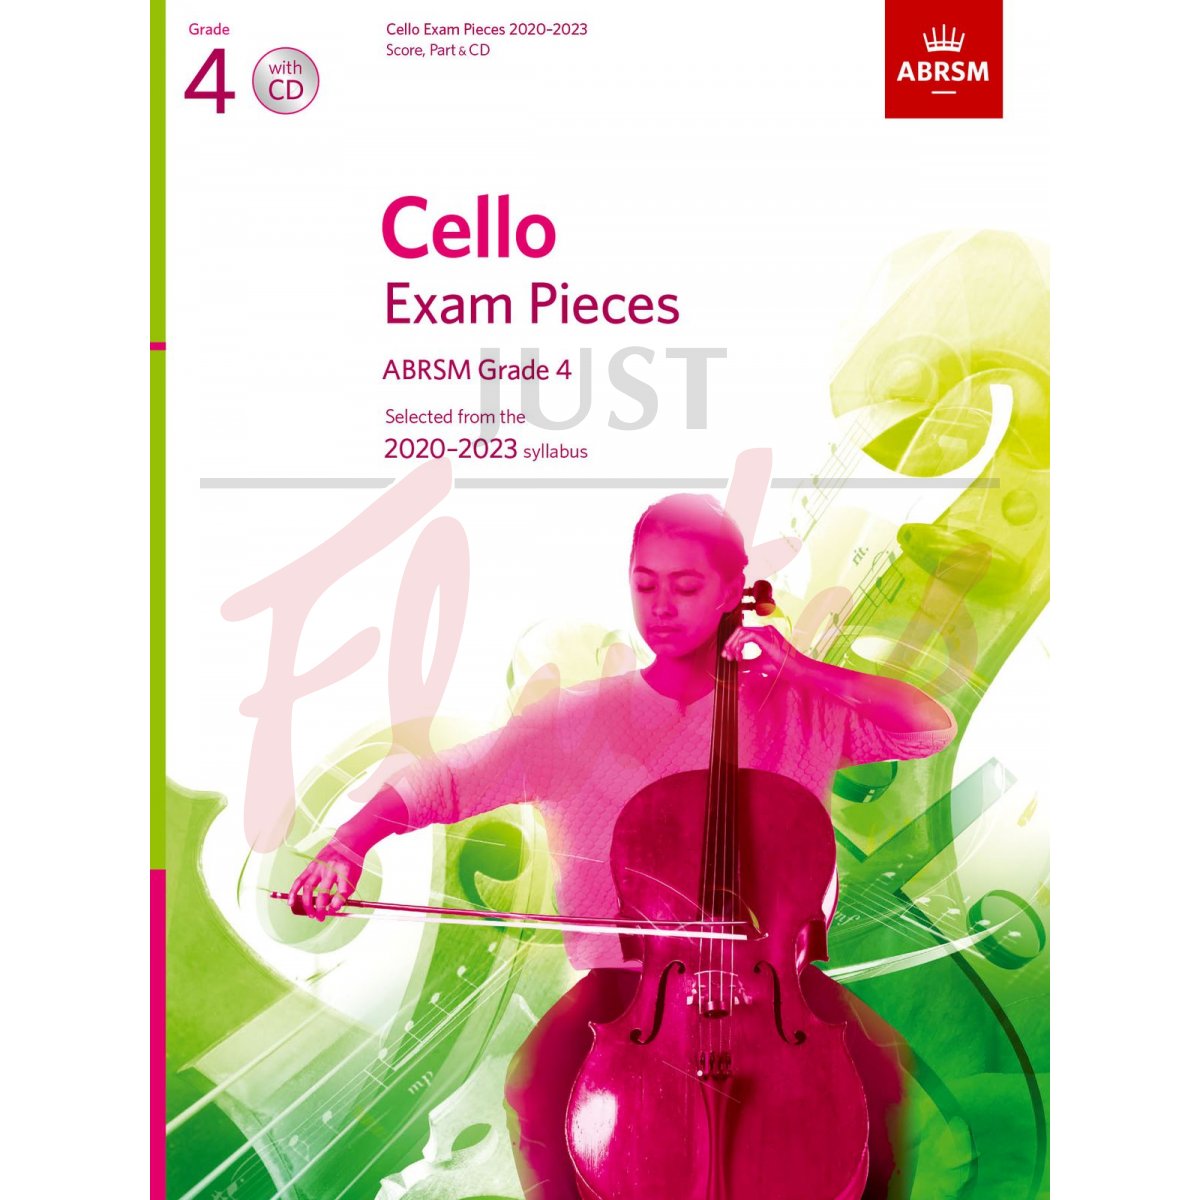 Cello Exam Pieces 2020-2023, Grade 4